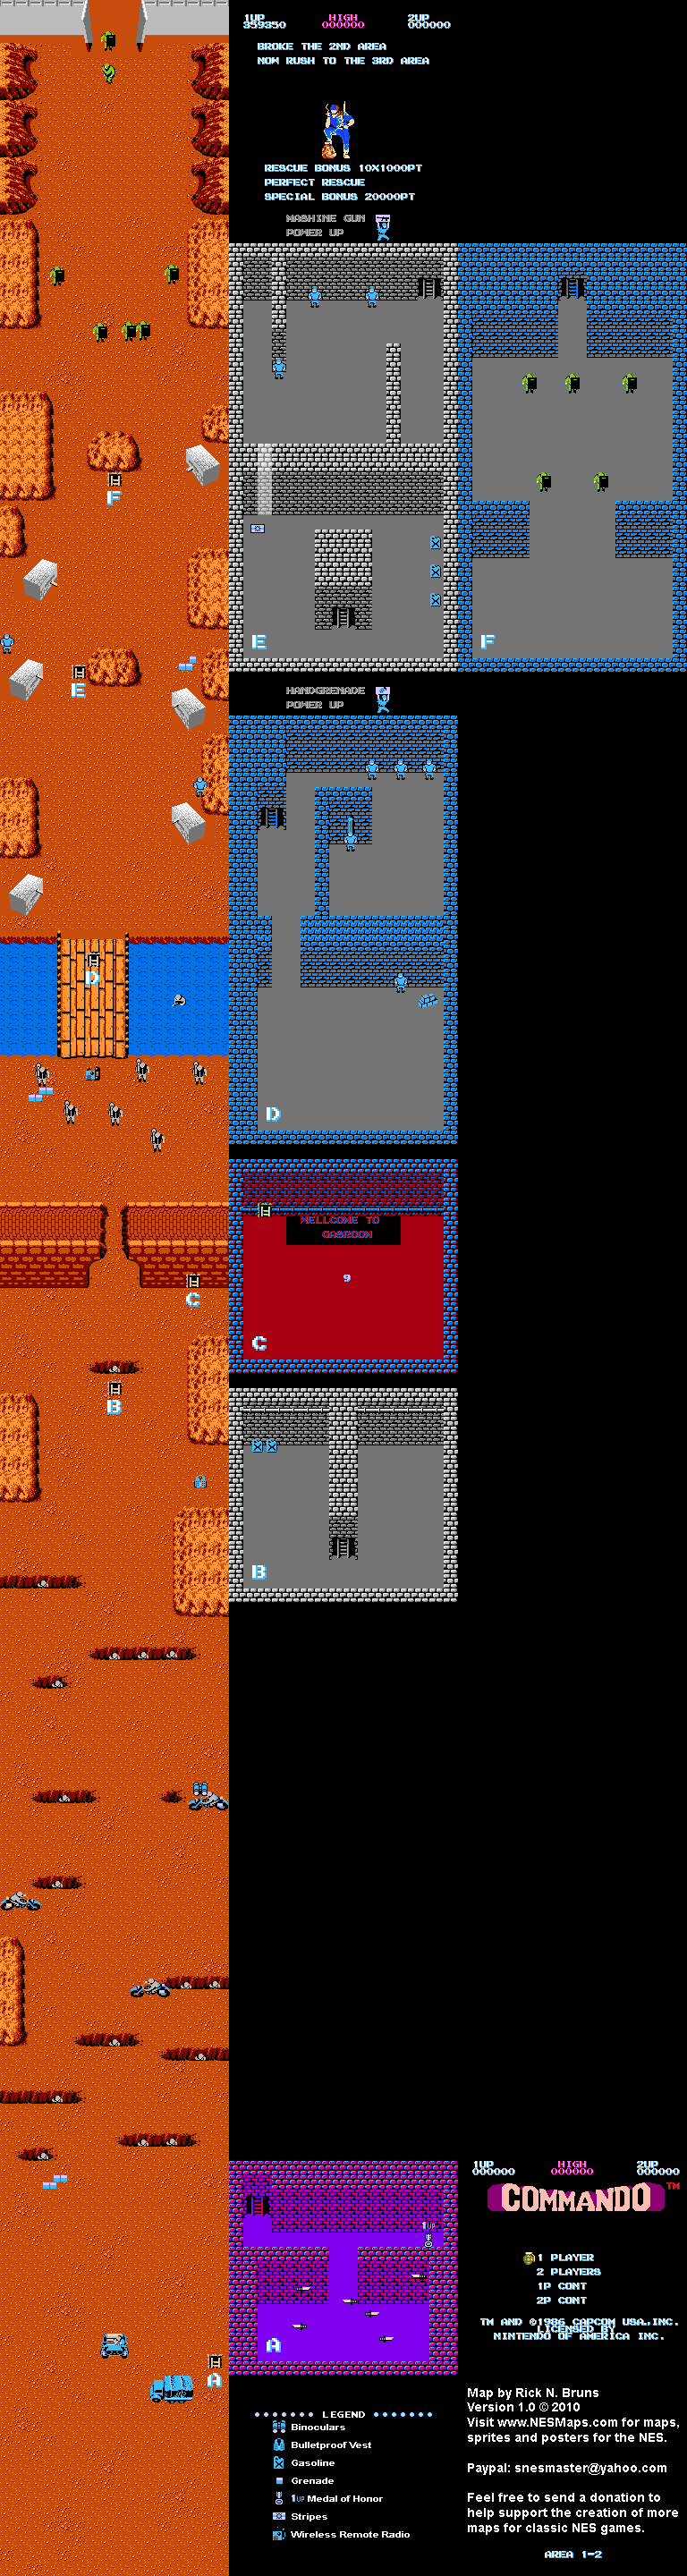 Commando - Area 1-2 - Nintendo NES Map